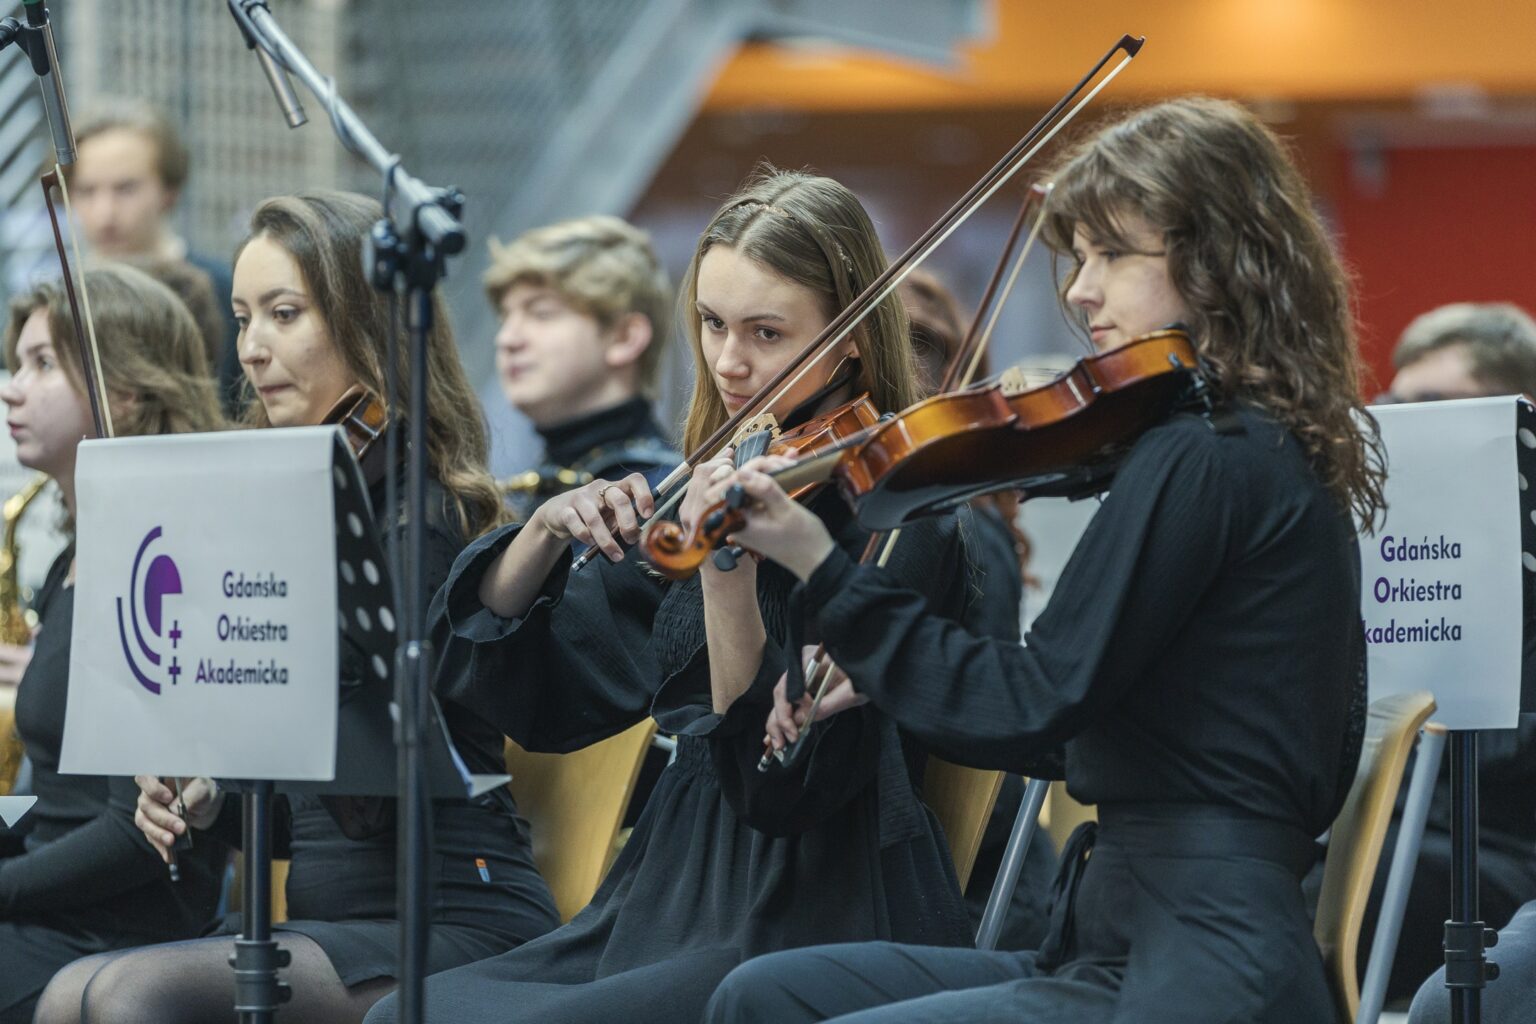 Gdańska Orkiestra Akademicka
(Fot. Alan Stocki/UG).
